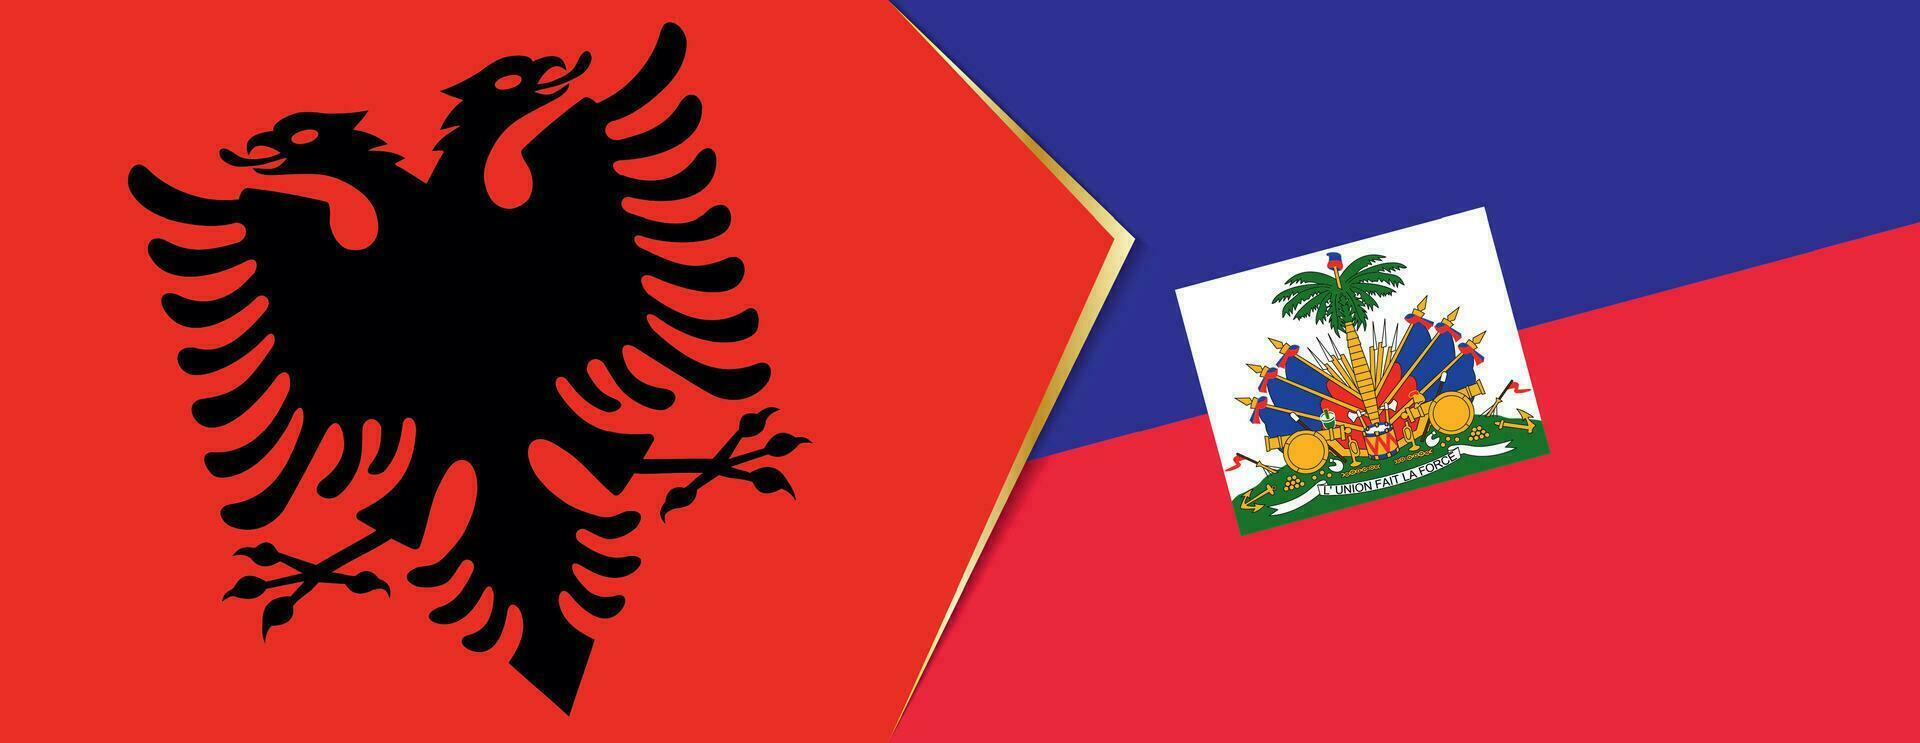 Albania y Haití banderas, dos vector banderas